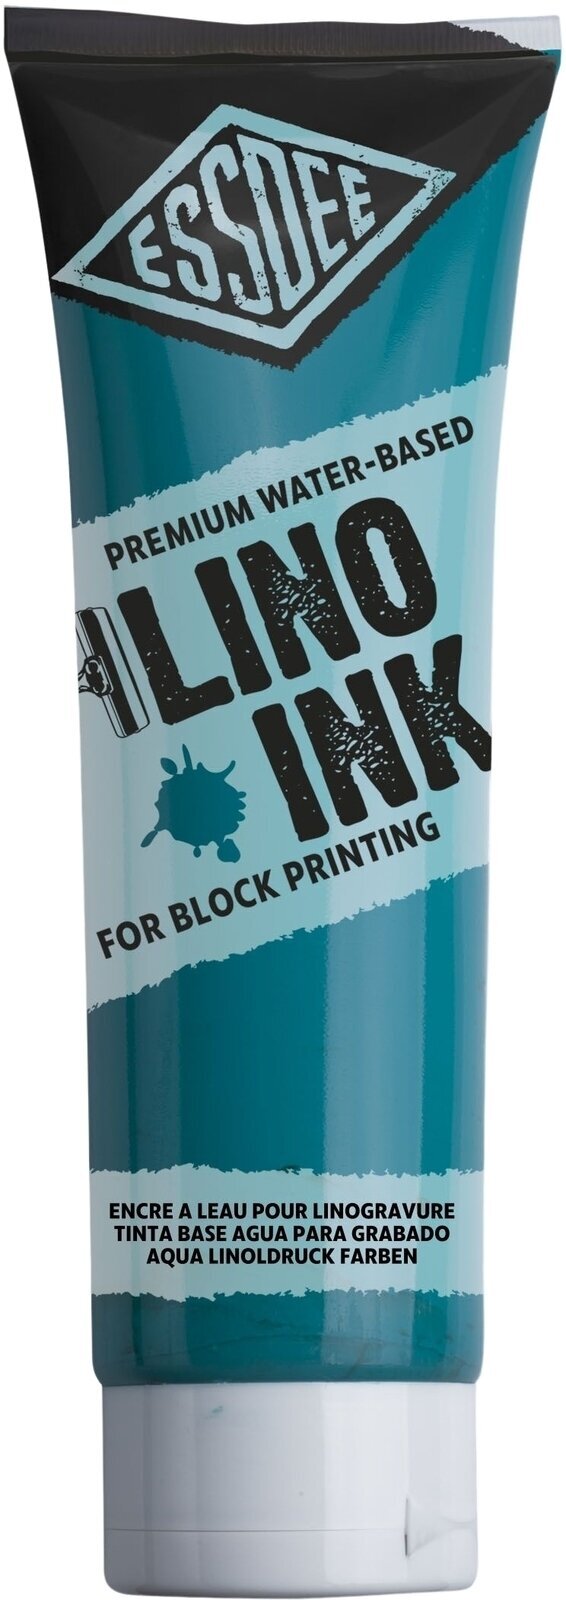 Peintures pour la linogravure Essdee Block Printing Ink Peintures pour la linogravure Turquoise 300 ml